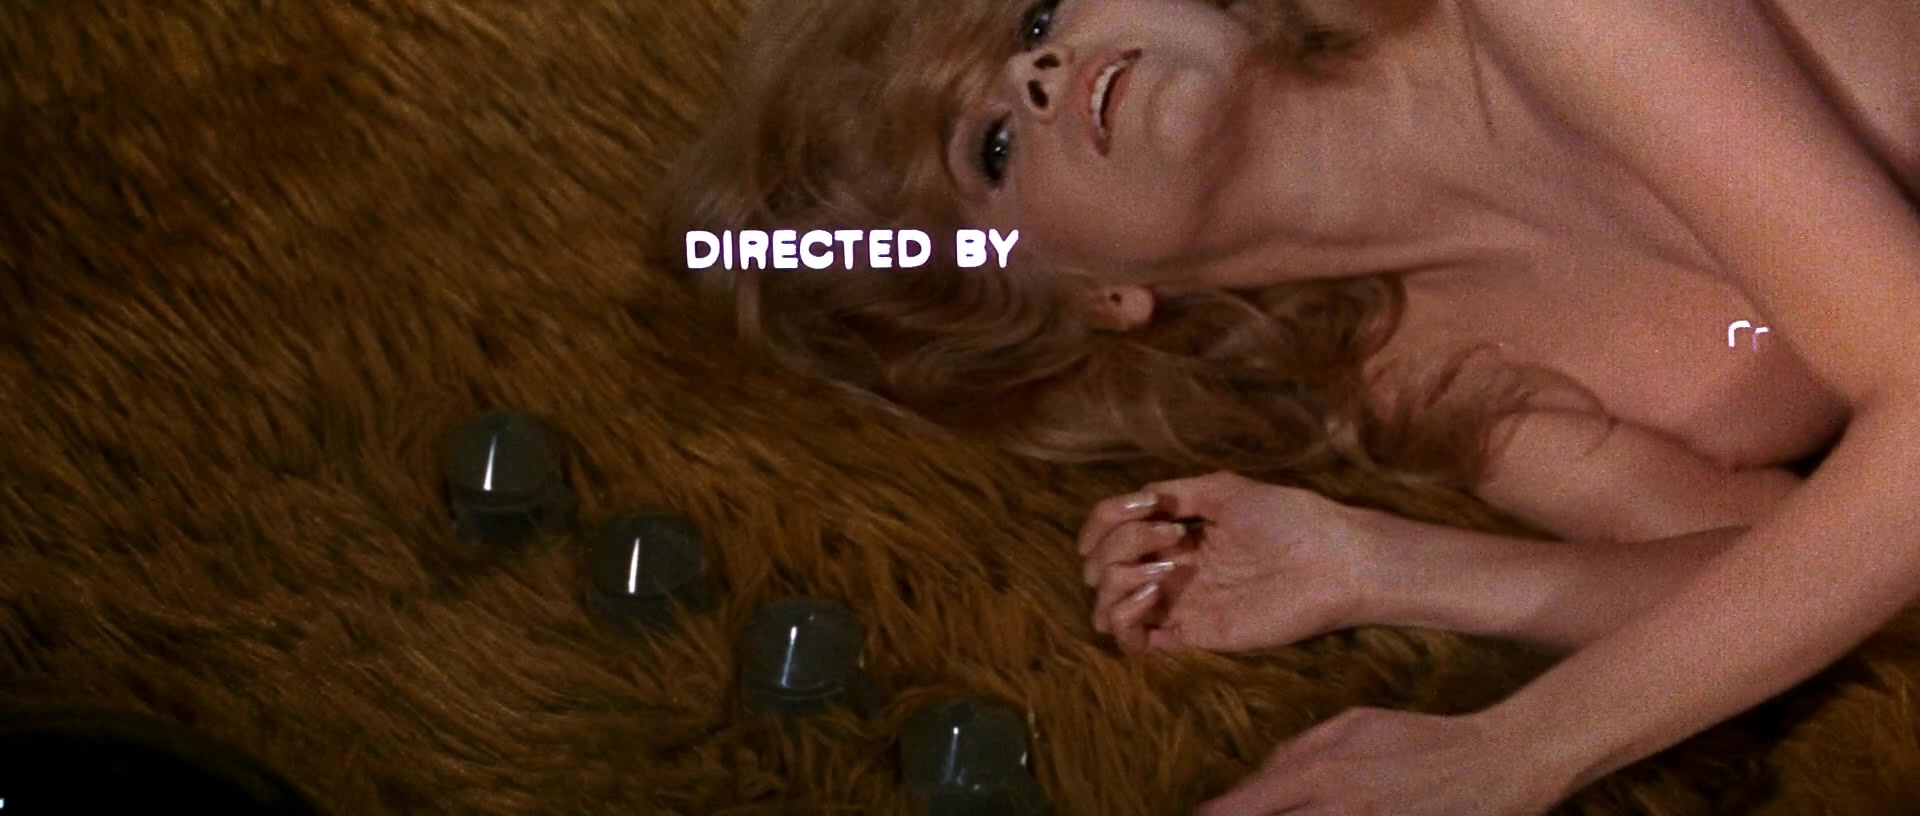 Jane Fonda nude pics.